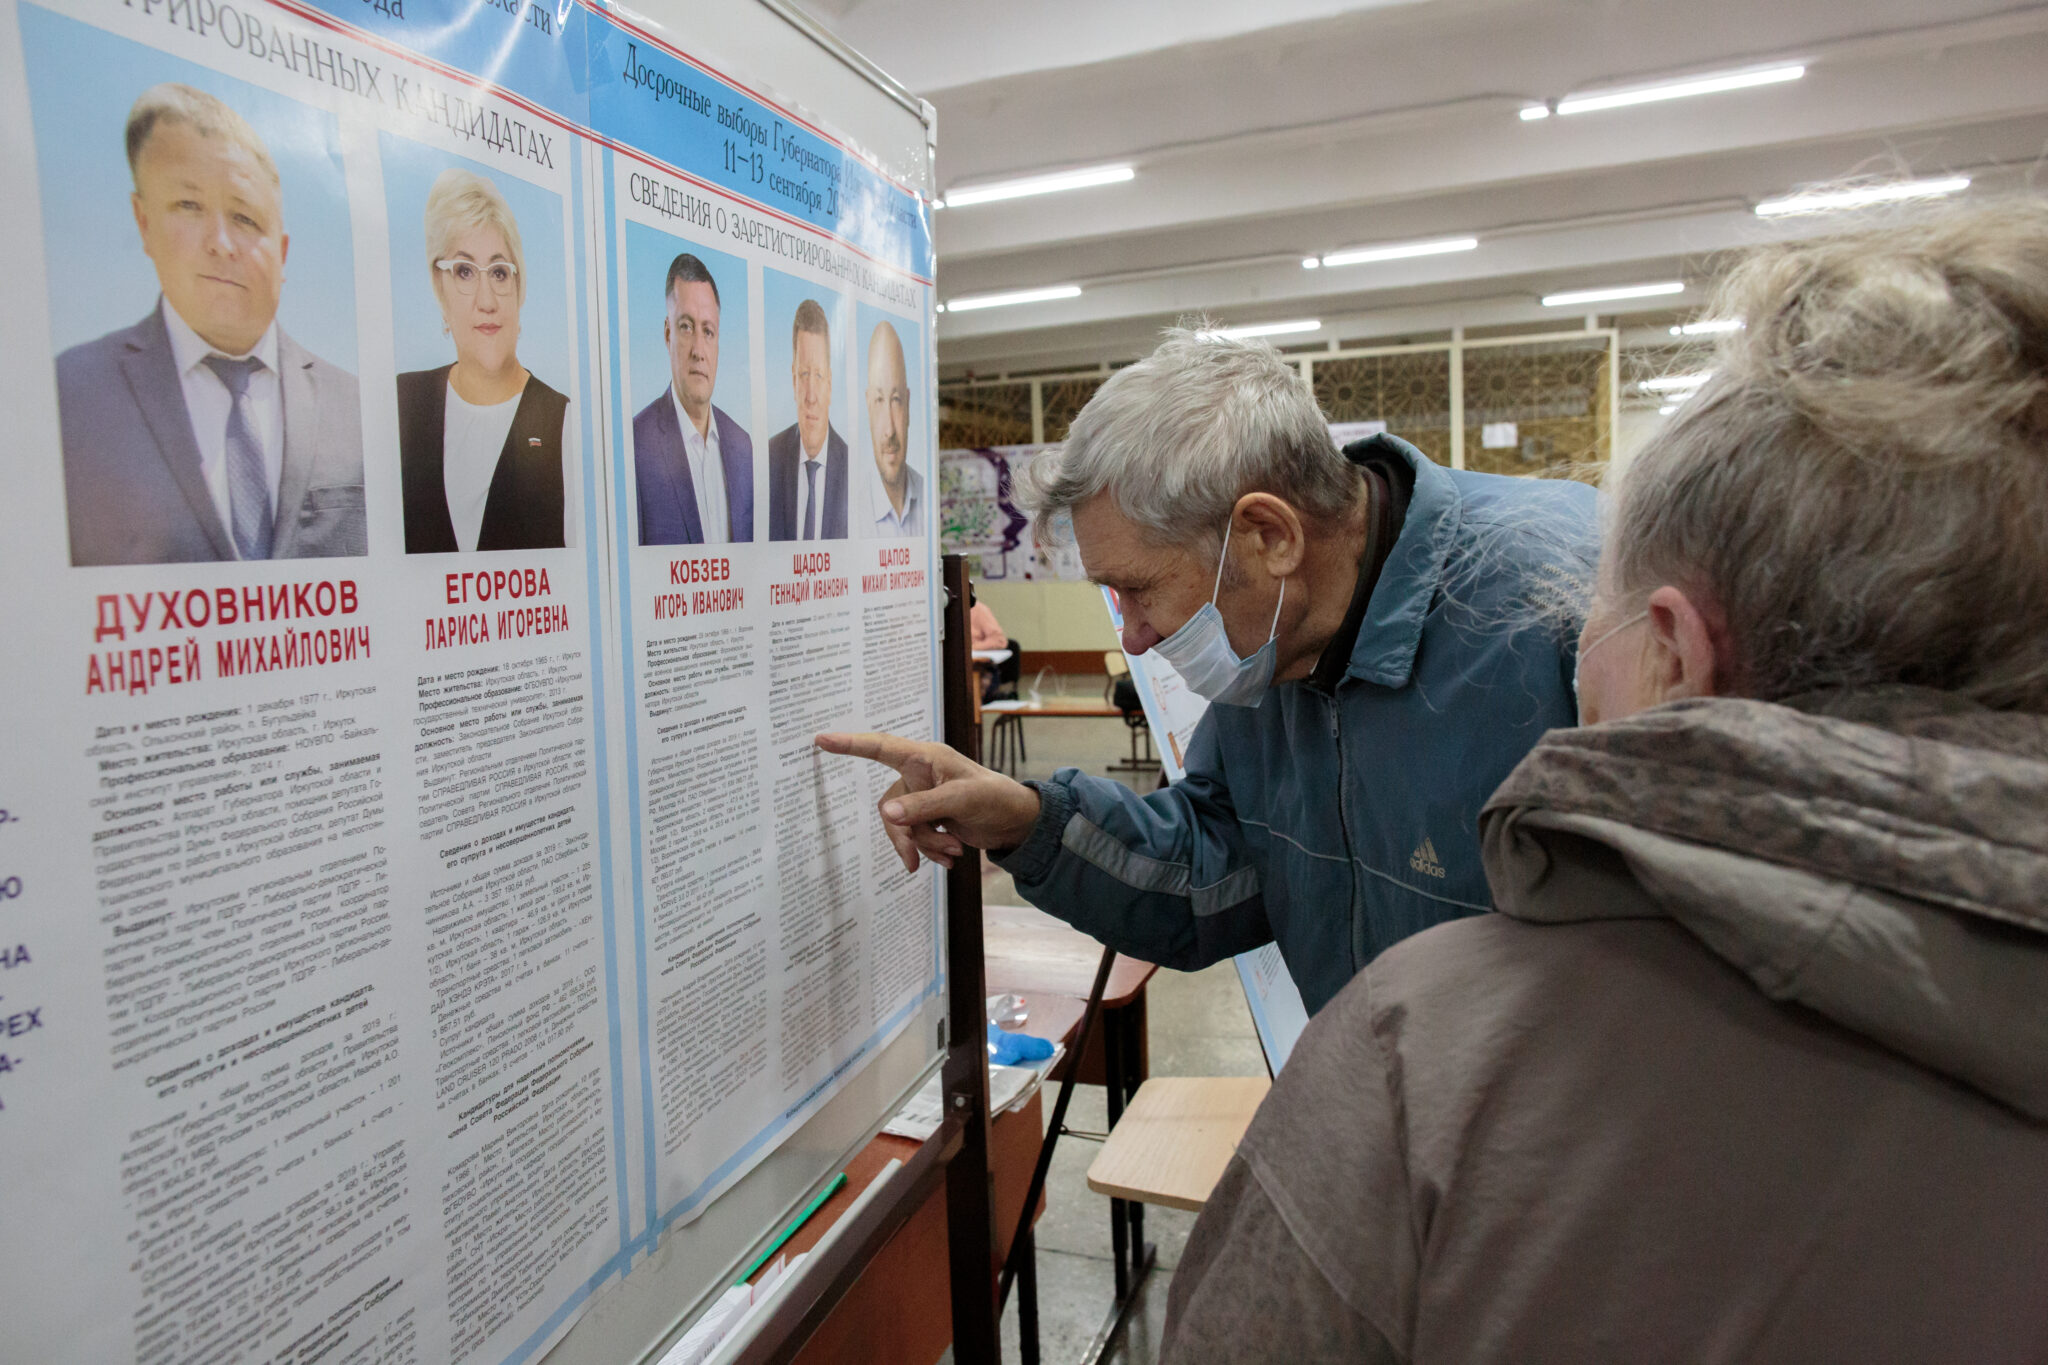 Единый день голосования в Иркутской области, 13 сентября 2020 г. Фото Yegor Aleyev / TASS / Scanpix / Leta